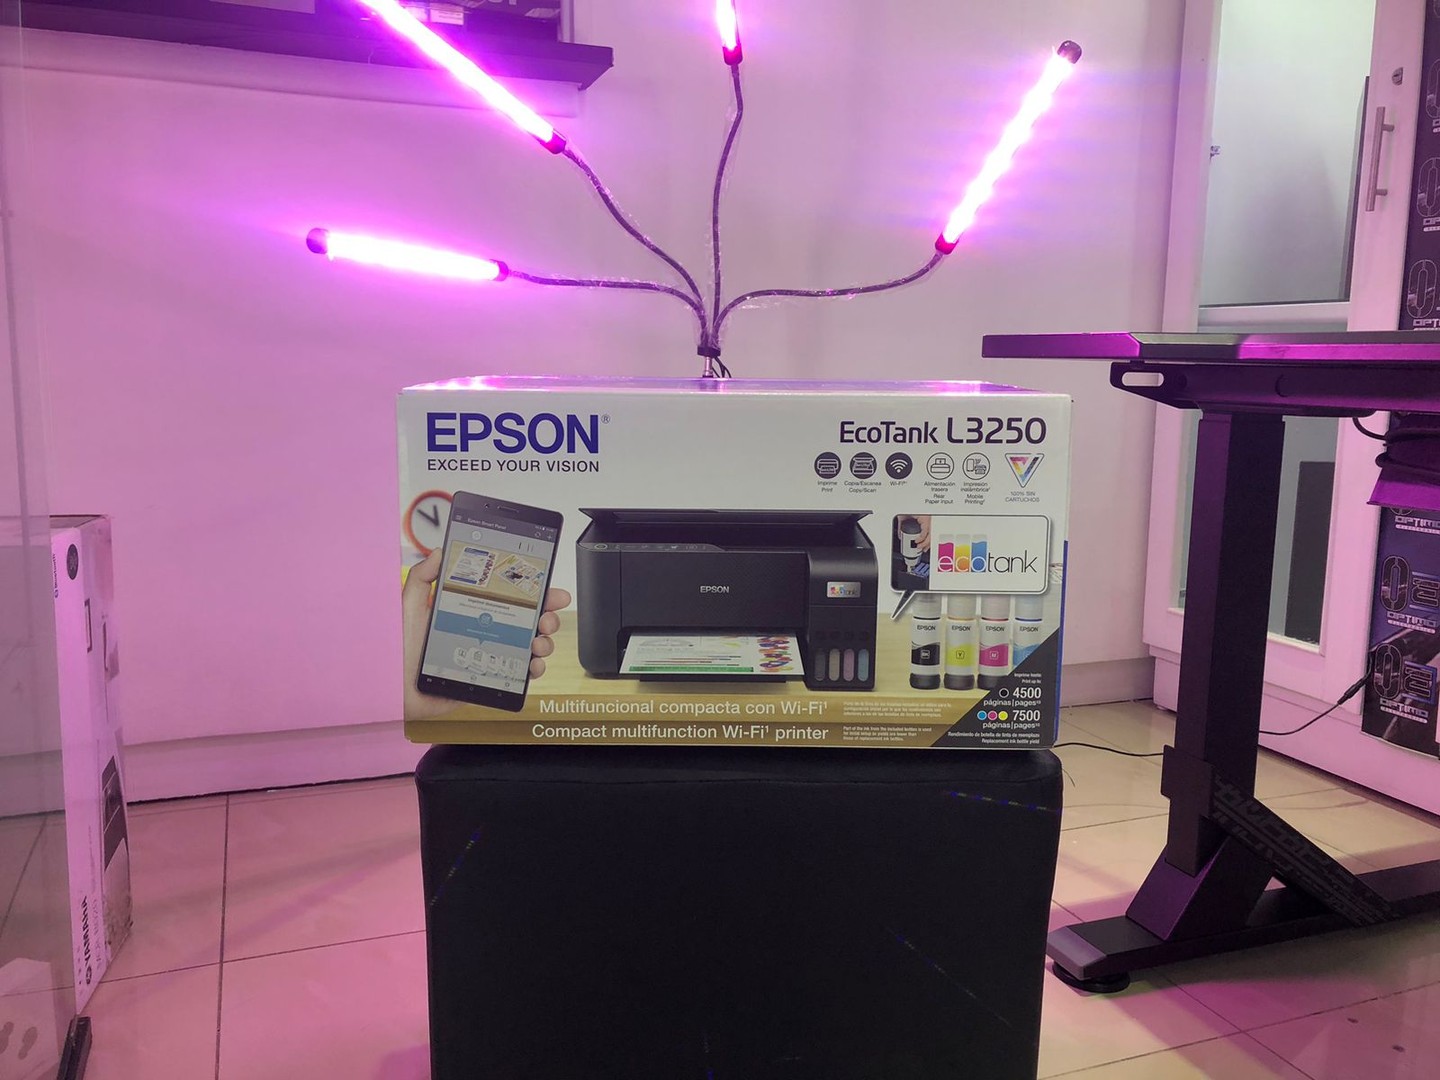 impresoras y scanners - Impresora Inalambrica y desde el celular Multifuncion Epson L3250 mas garantia 0